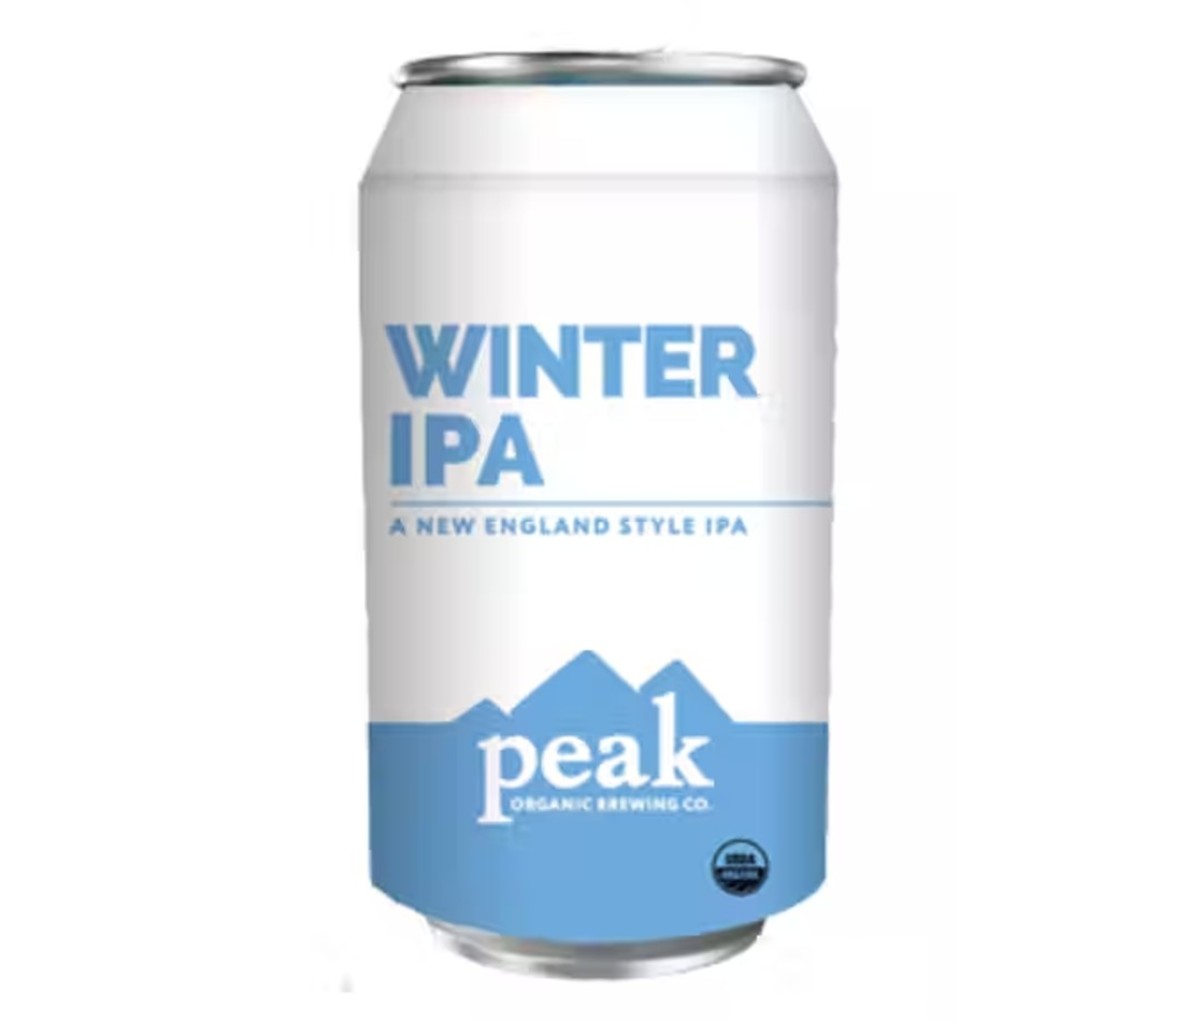 A can of Peak Organic Winter IPA